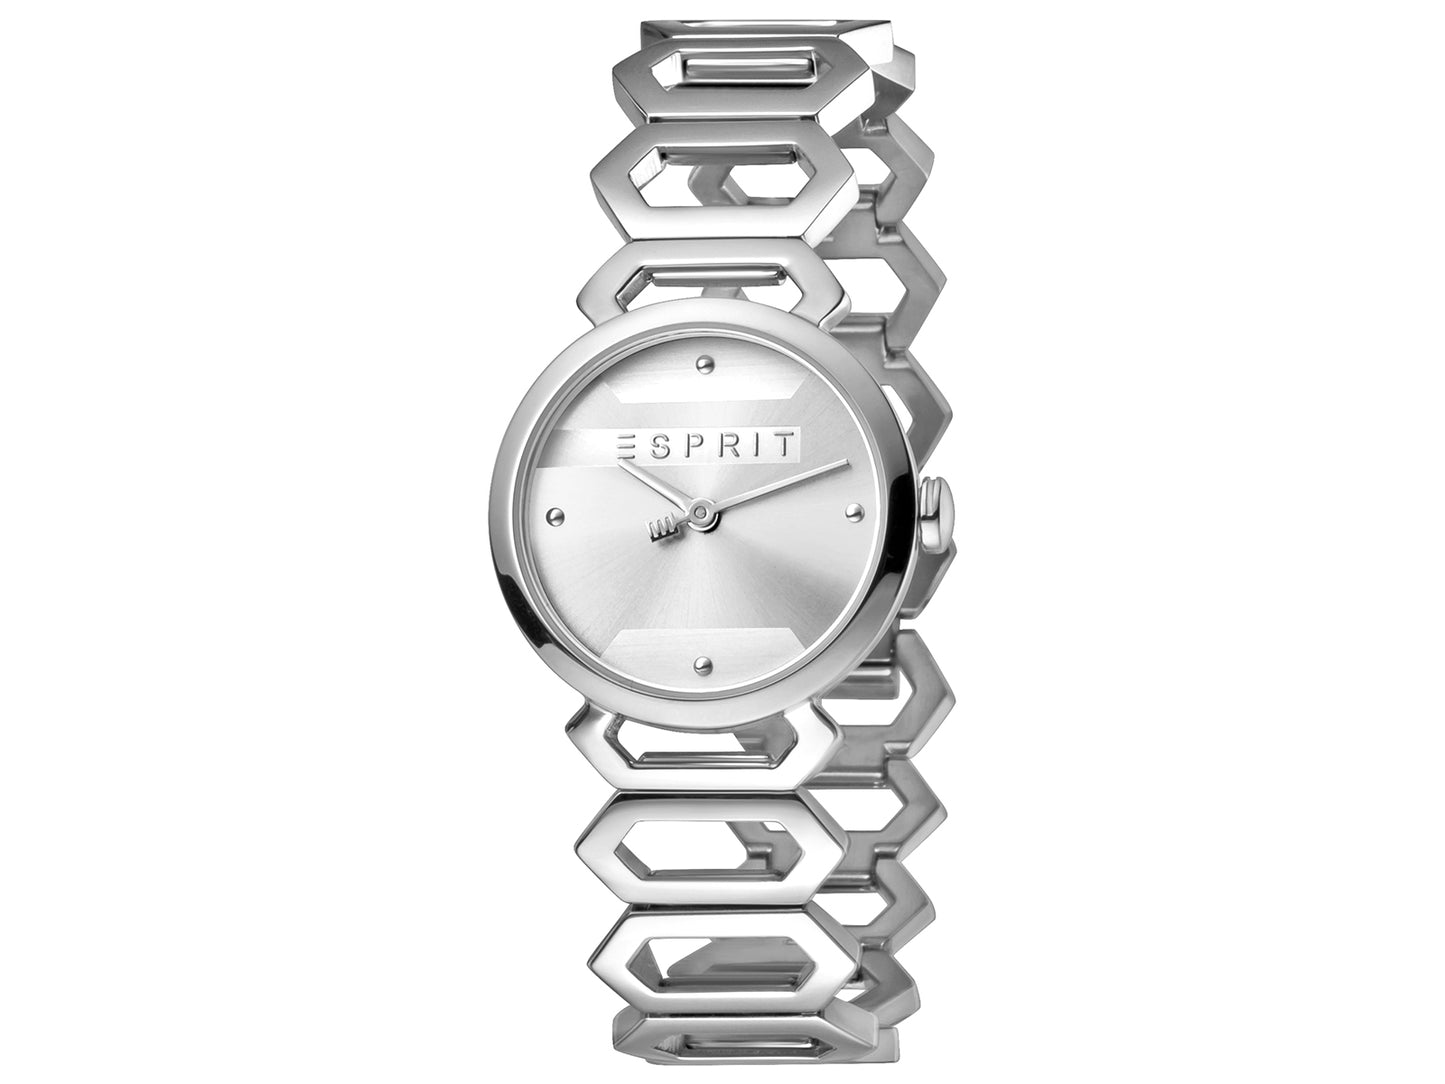 Esprit Stainless Steel Watch